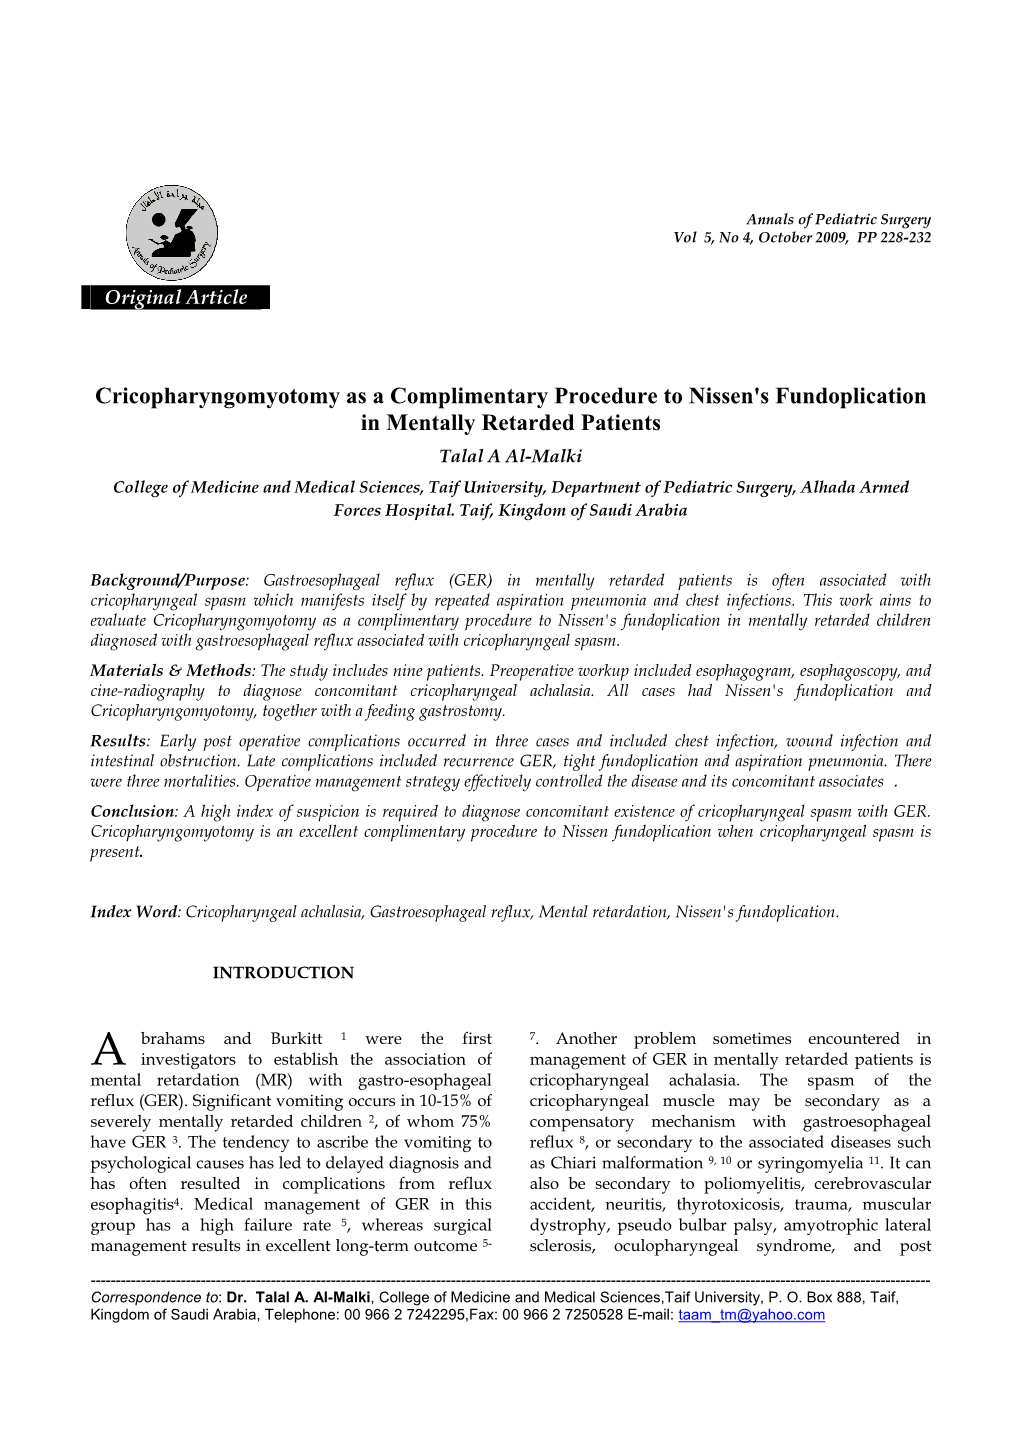 Cricopharyngomyotomy As a Complimentary Procedure To